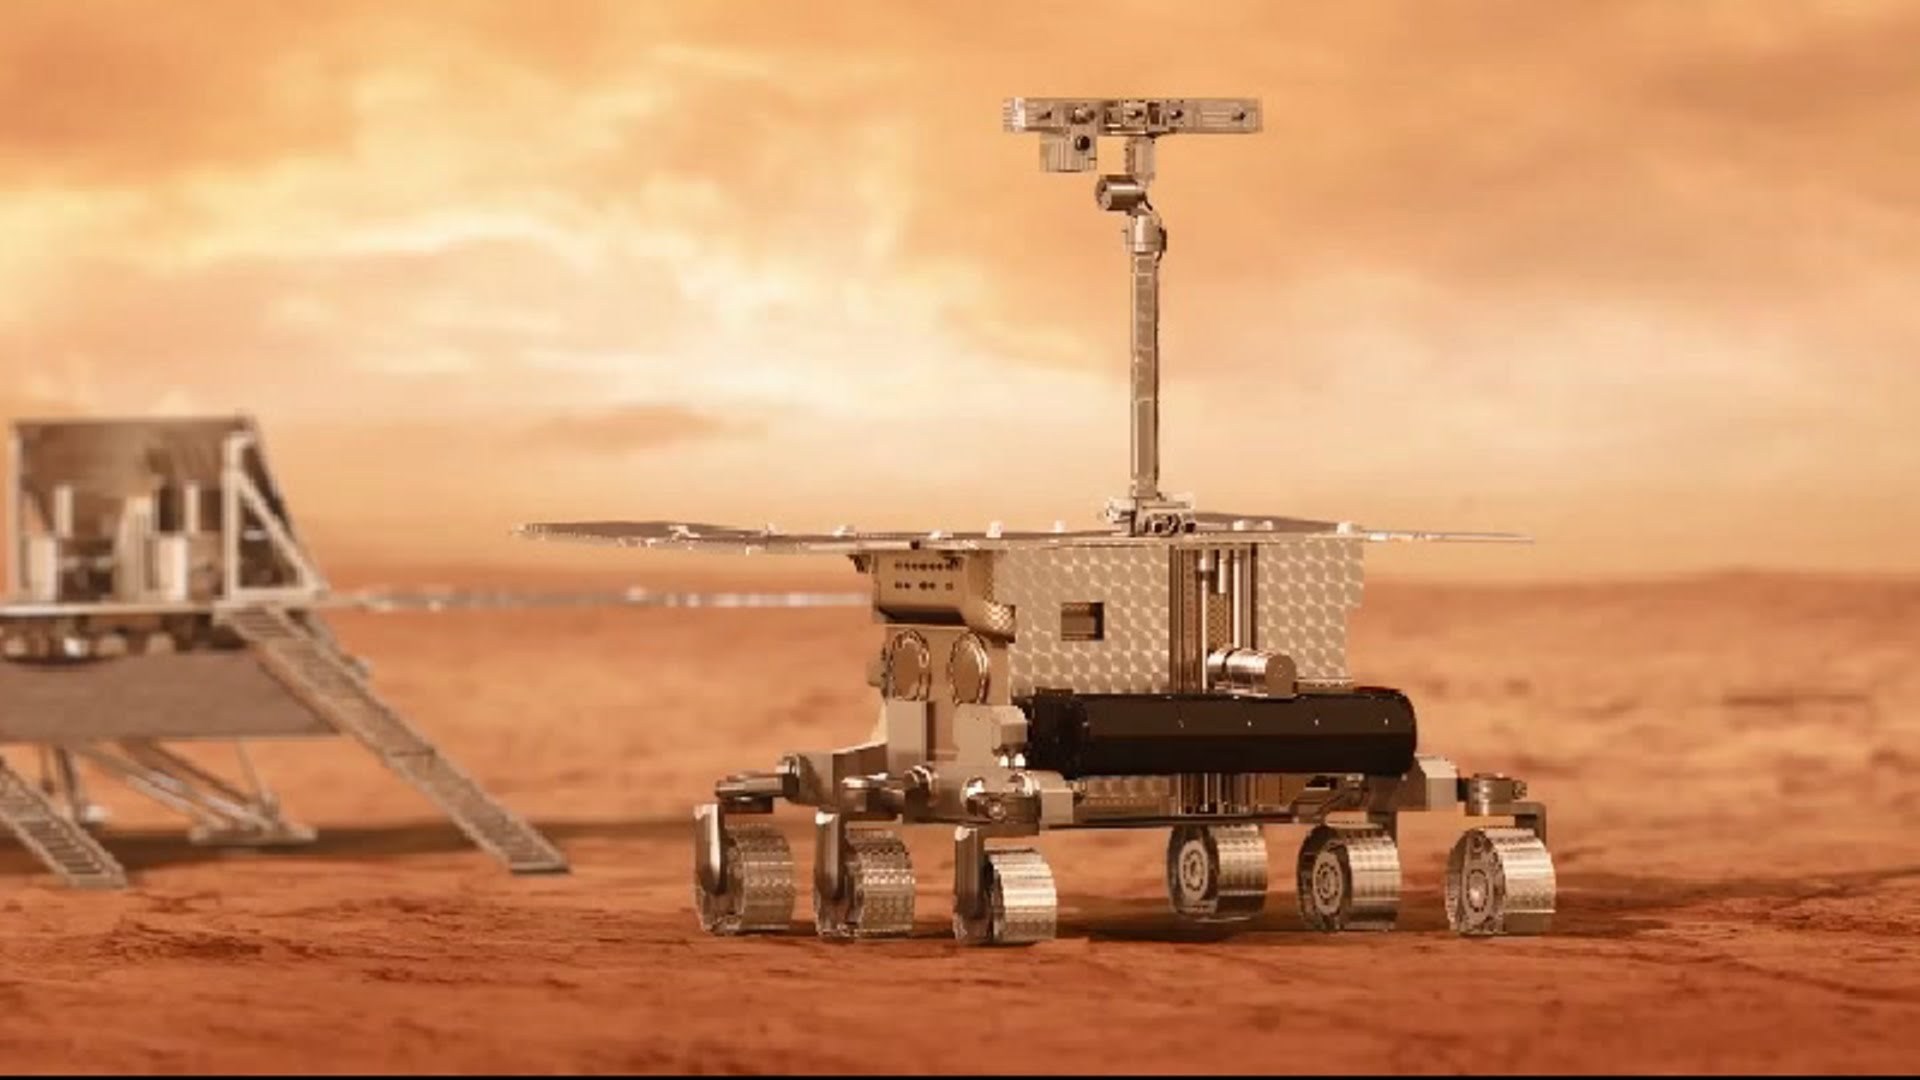 Κοινή Ευρω-Ρωσική αποστολή στον πλανήτη Άρη- Το 2020 η εκτόξευση